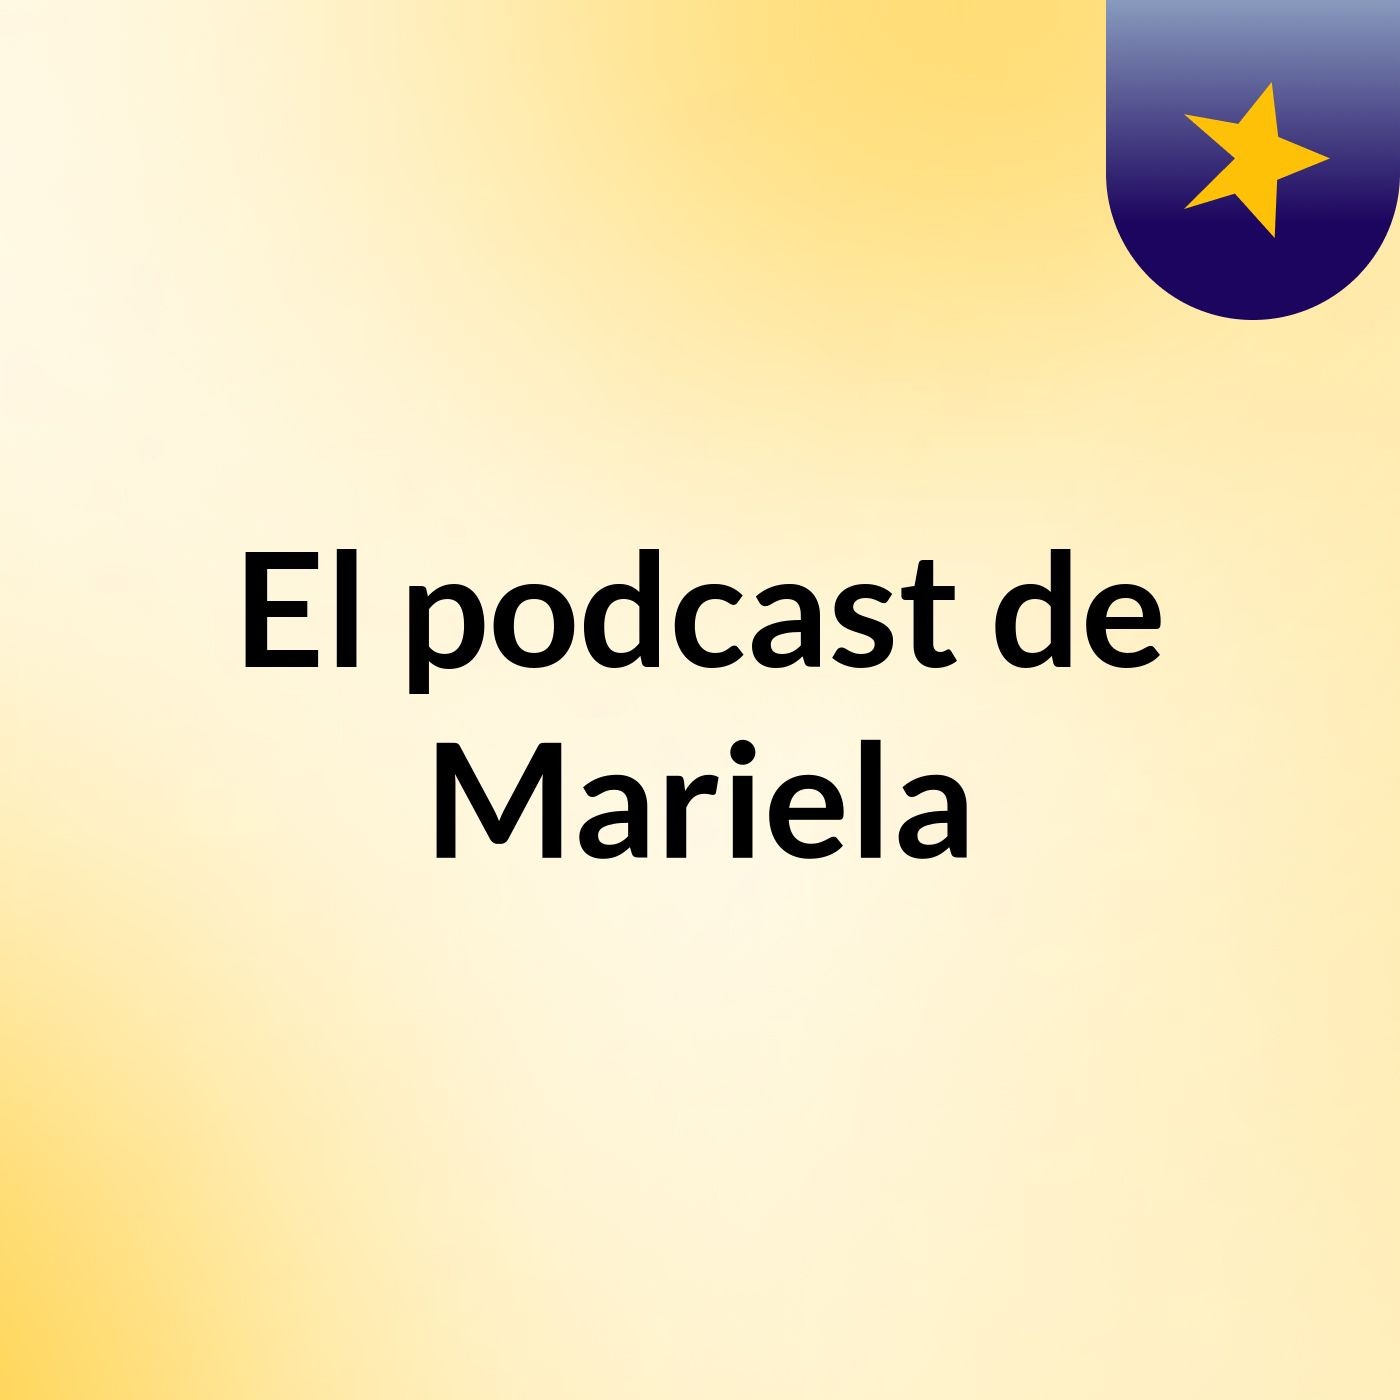 El podcast de Mariela